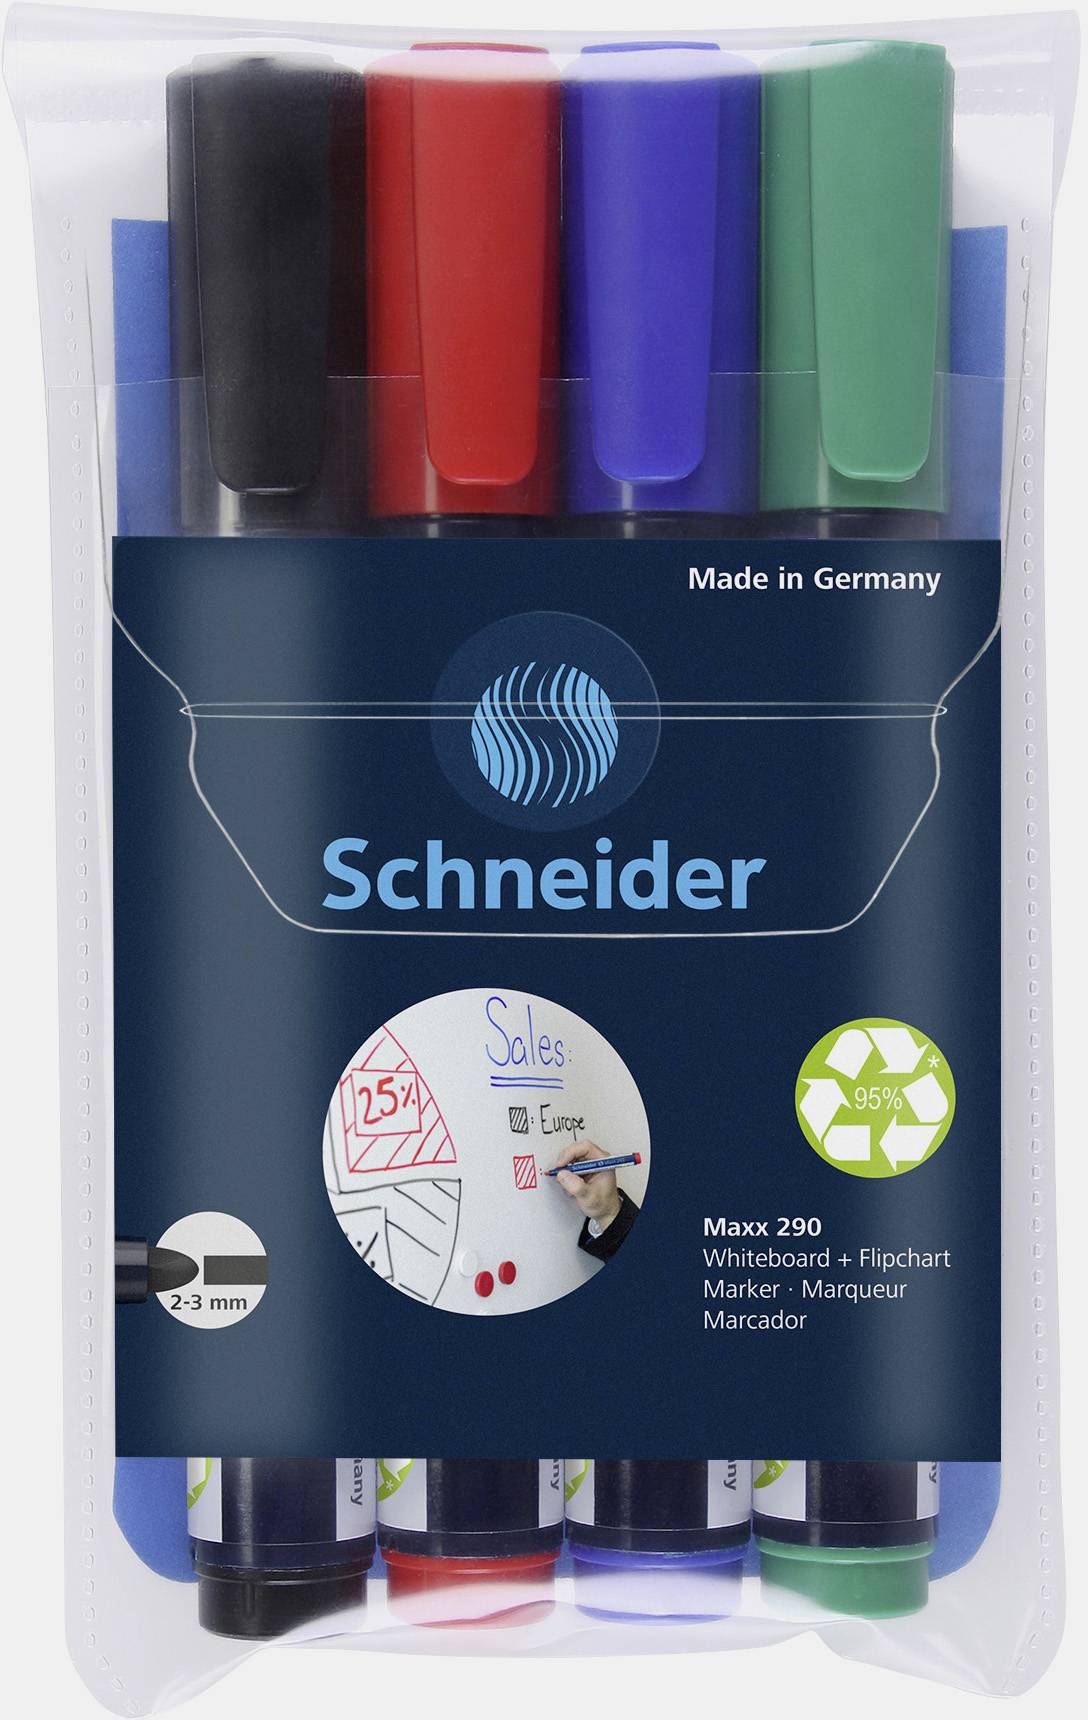 Set 4 markere - Whiteboard and Flipchart - Maxx 290, 2-3 mm | Schneider